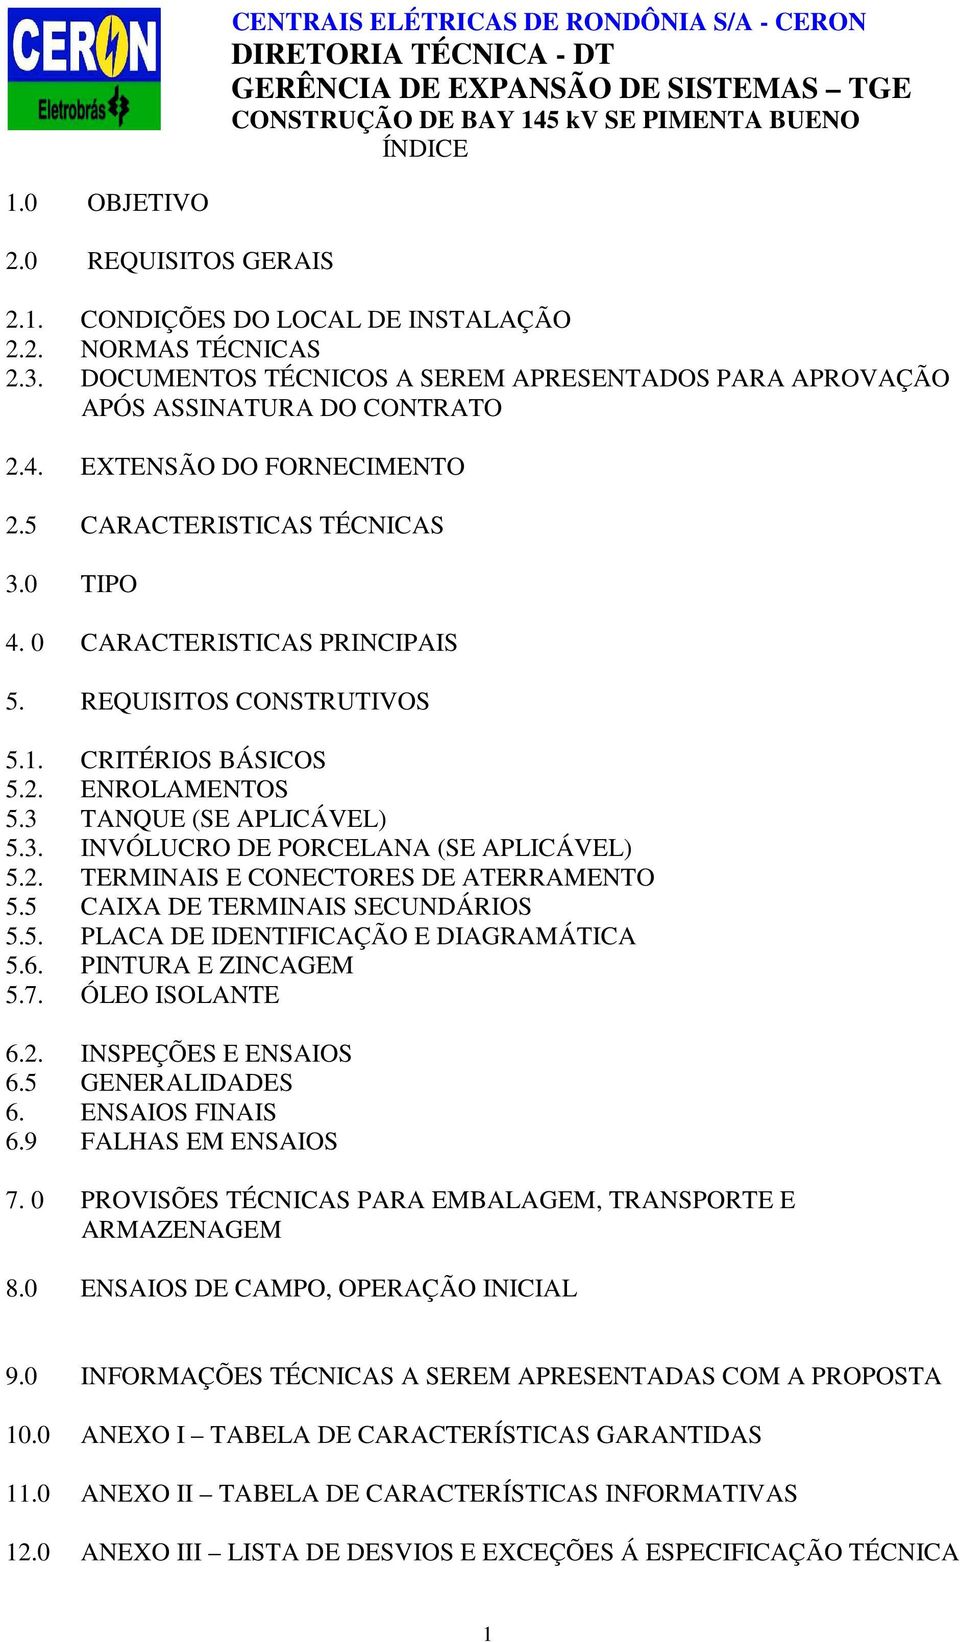 2. TERMINAIS E CONECTORES DE ATERRAMENTO 5.5 CAIXA DE TERMINAIS SECUNDÁRIOS 5.5. PLACA DE IDENTIFICAÇÃO E DIAGRAMÁTICA 5.6. PINTURA E ZINCAGEM 5.7. ÓLEO ISOLANTE 6.2. INSPEÇÕES E ENSAIOS 6.